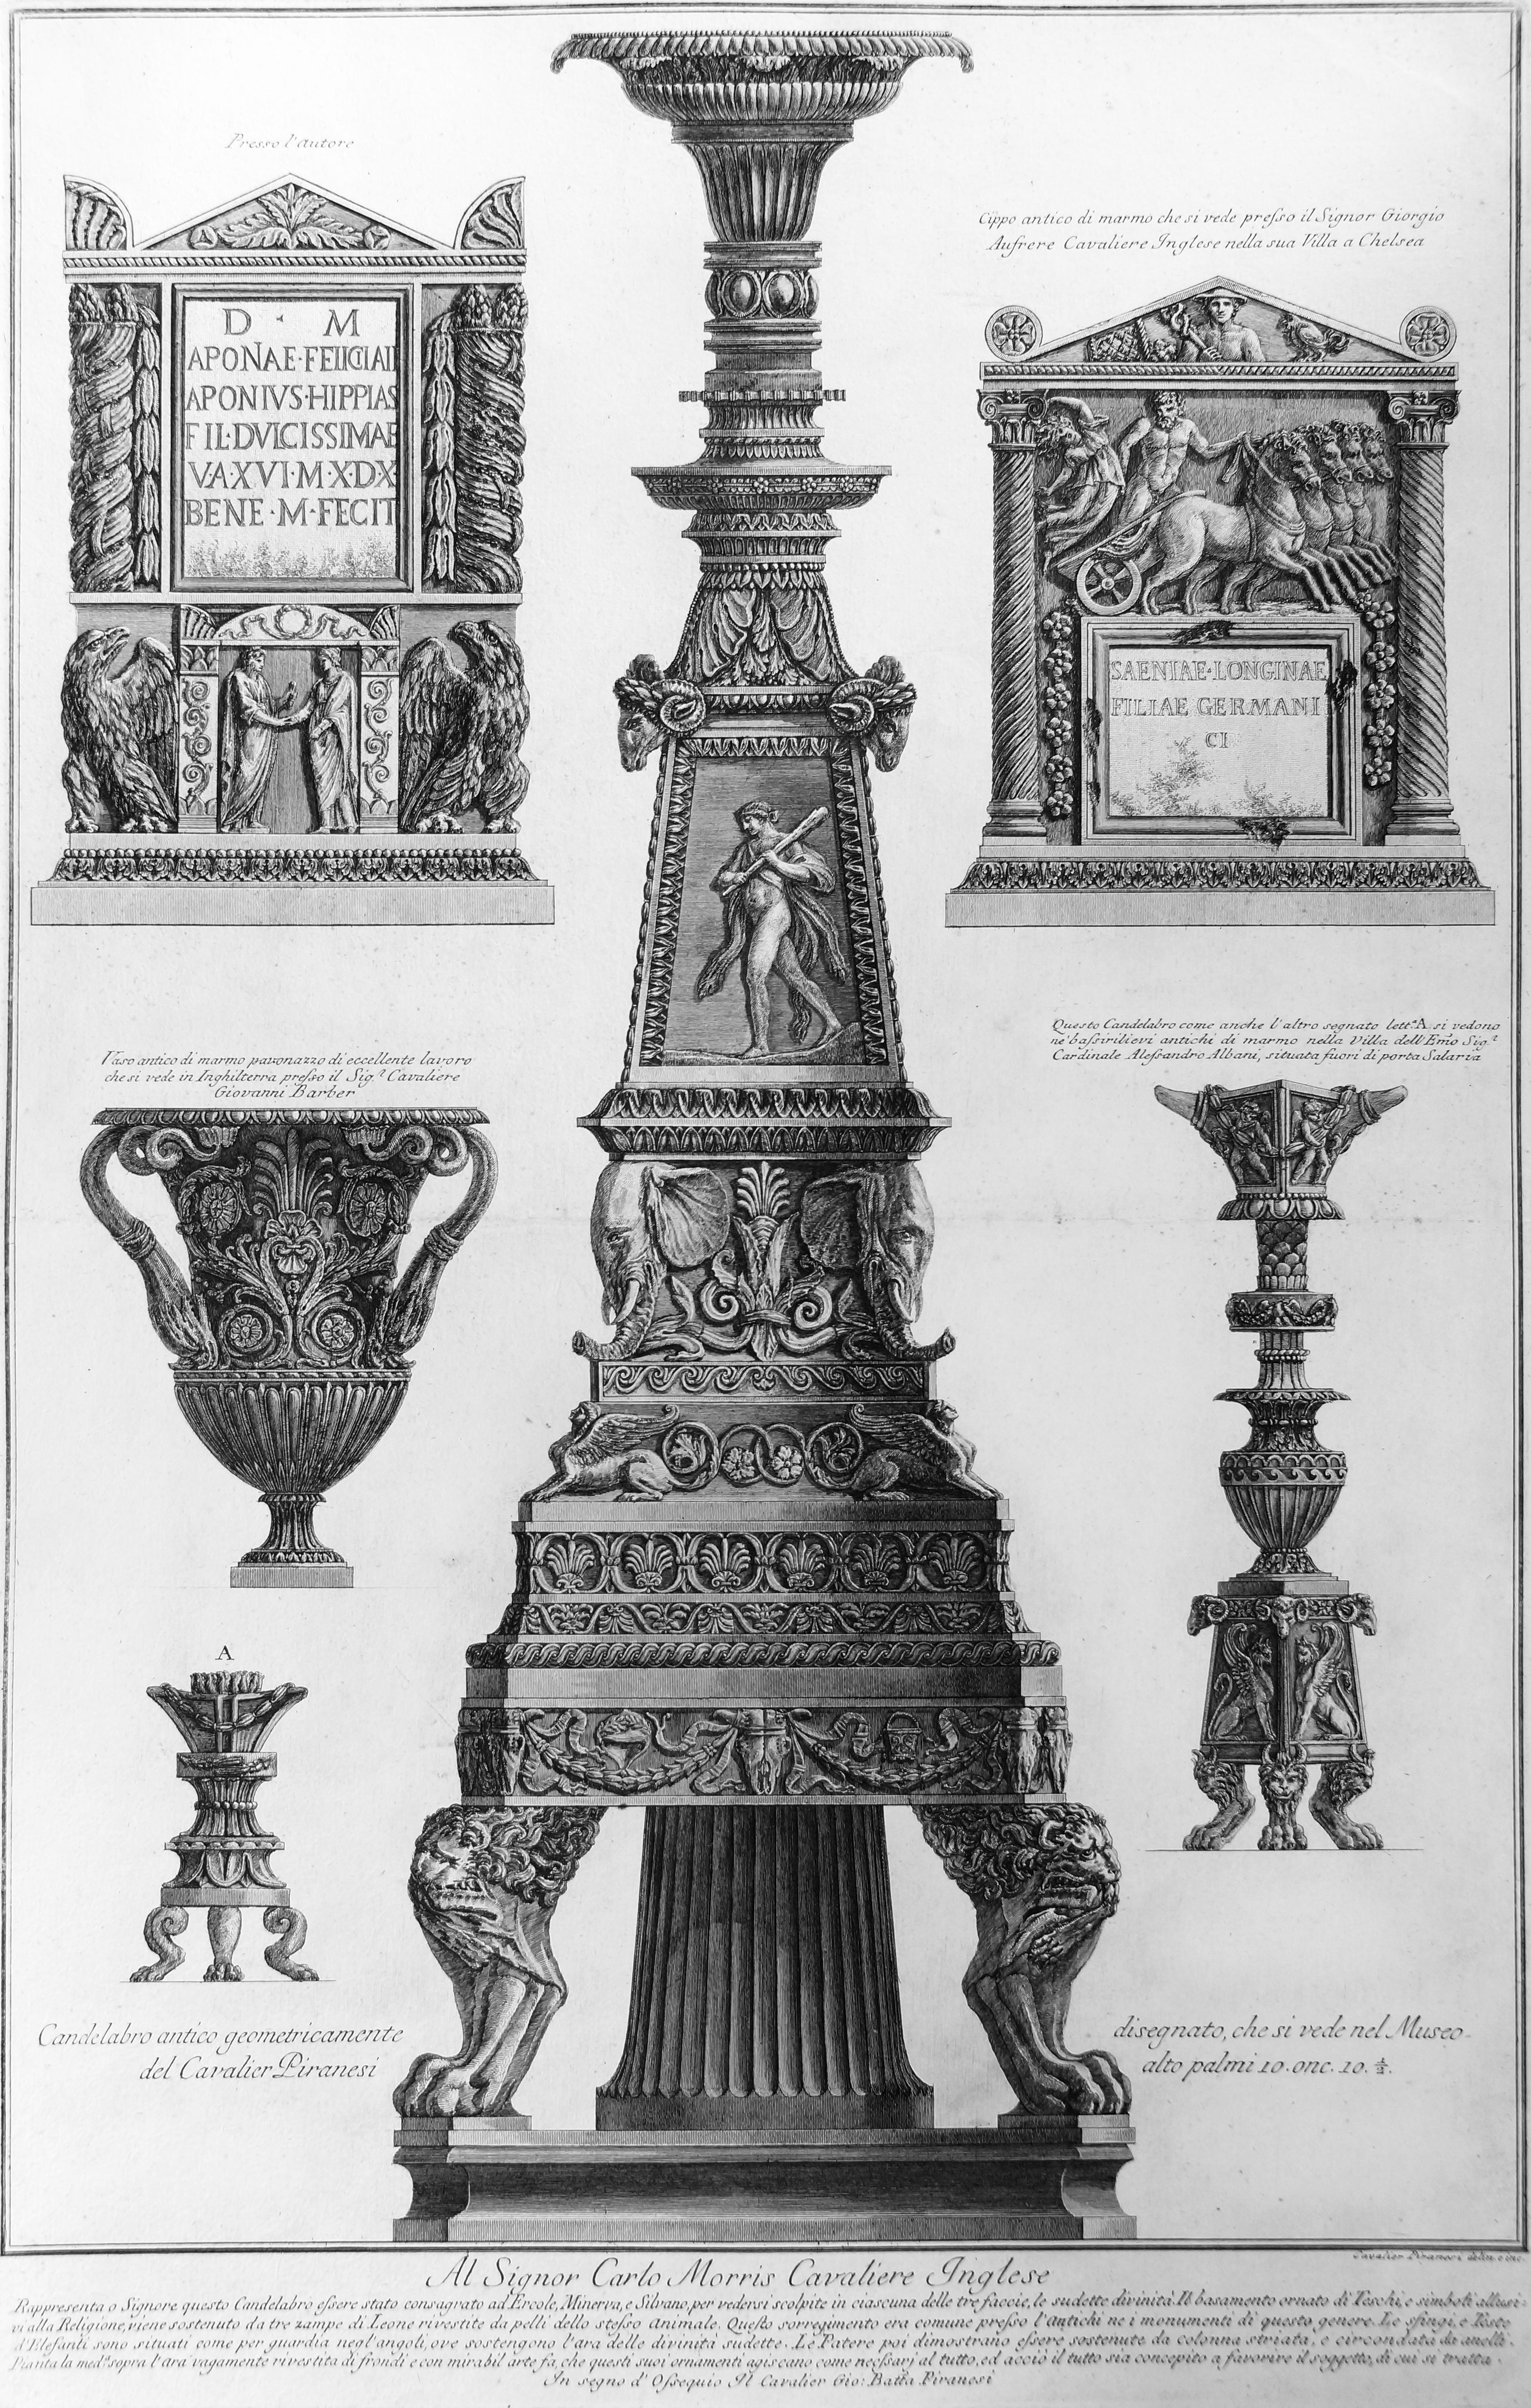 Giovanni Battista Piranesi Figurative Print - Vari Candelabri, un Vaso e Due Urne Cinerarie - Etching - 1778